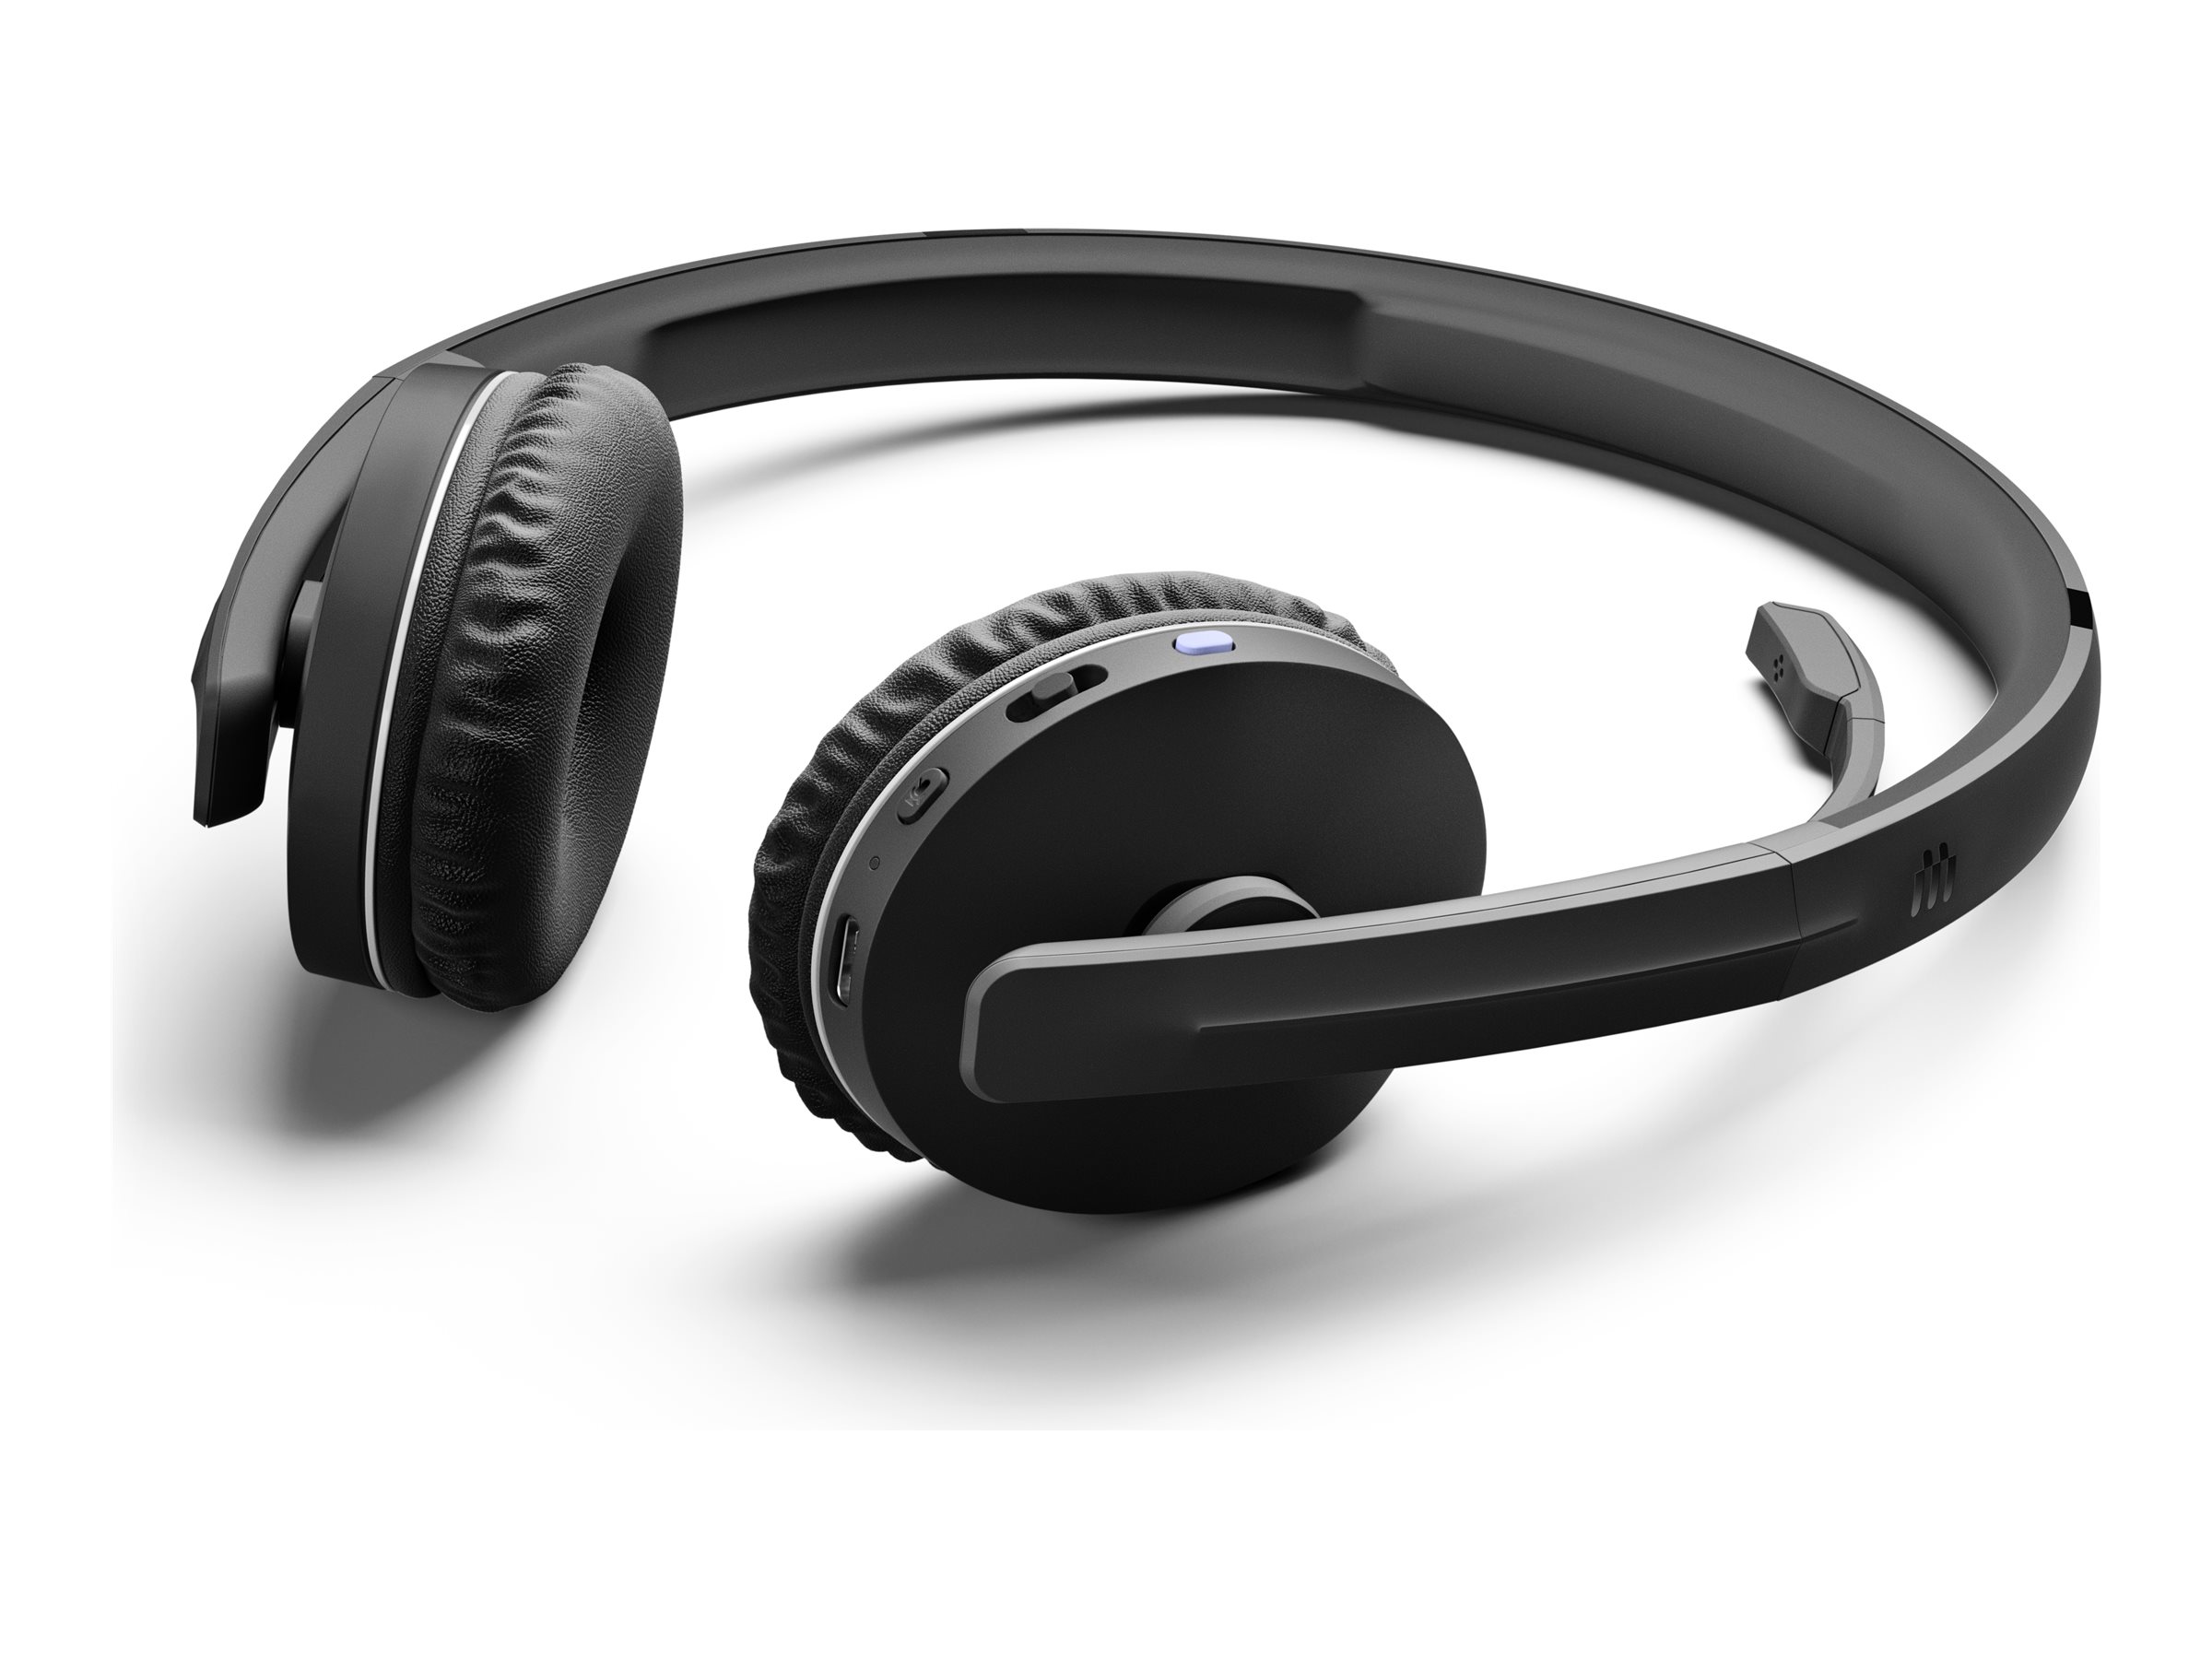 EPOS ADAPT 260 - Micro-casque - sur-oreille - Bluetooth - sans fil - USB - noir - Certifié pour Microsoft Teams, Optimisé pour la CU - pour ADAPT 230, 231, 261 - 1000882 - Écouteurs